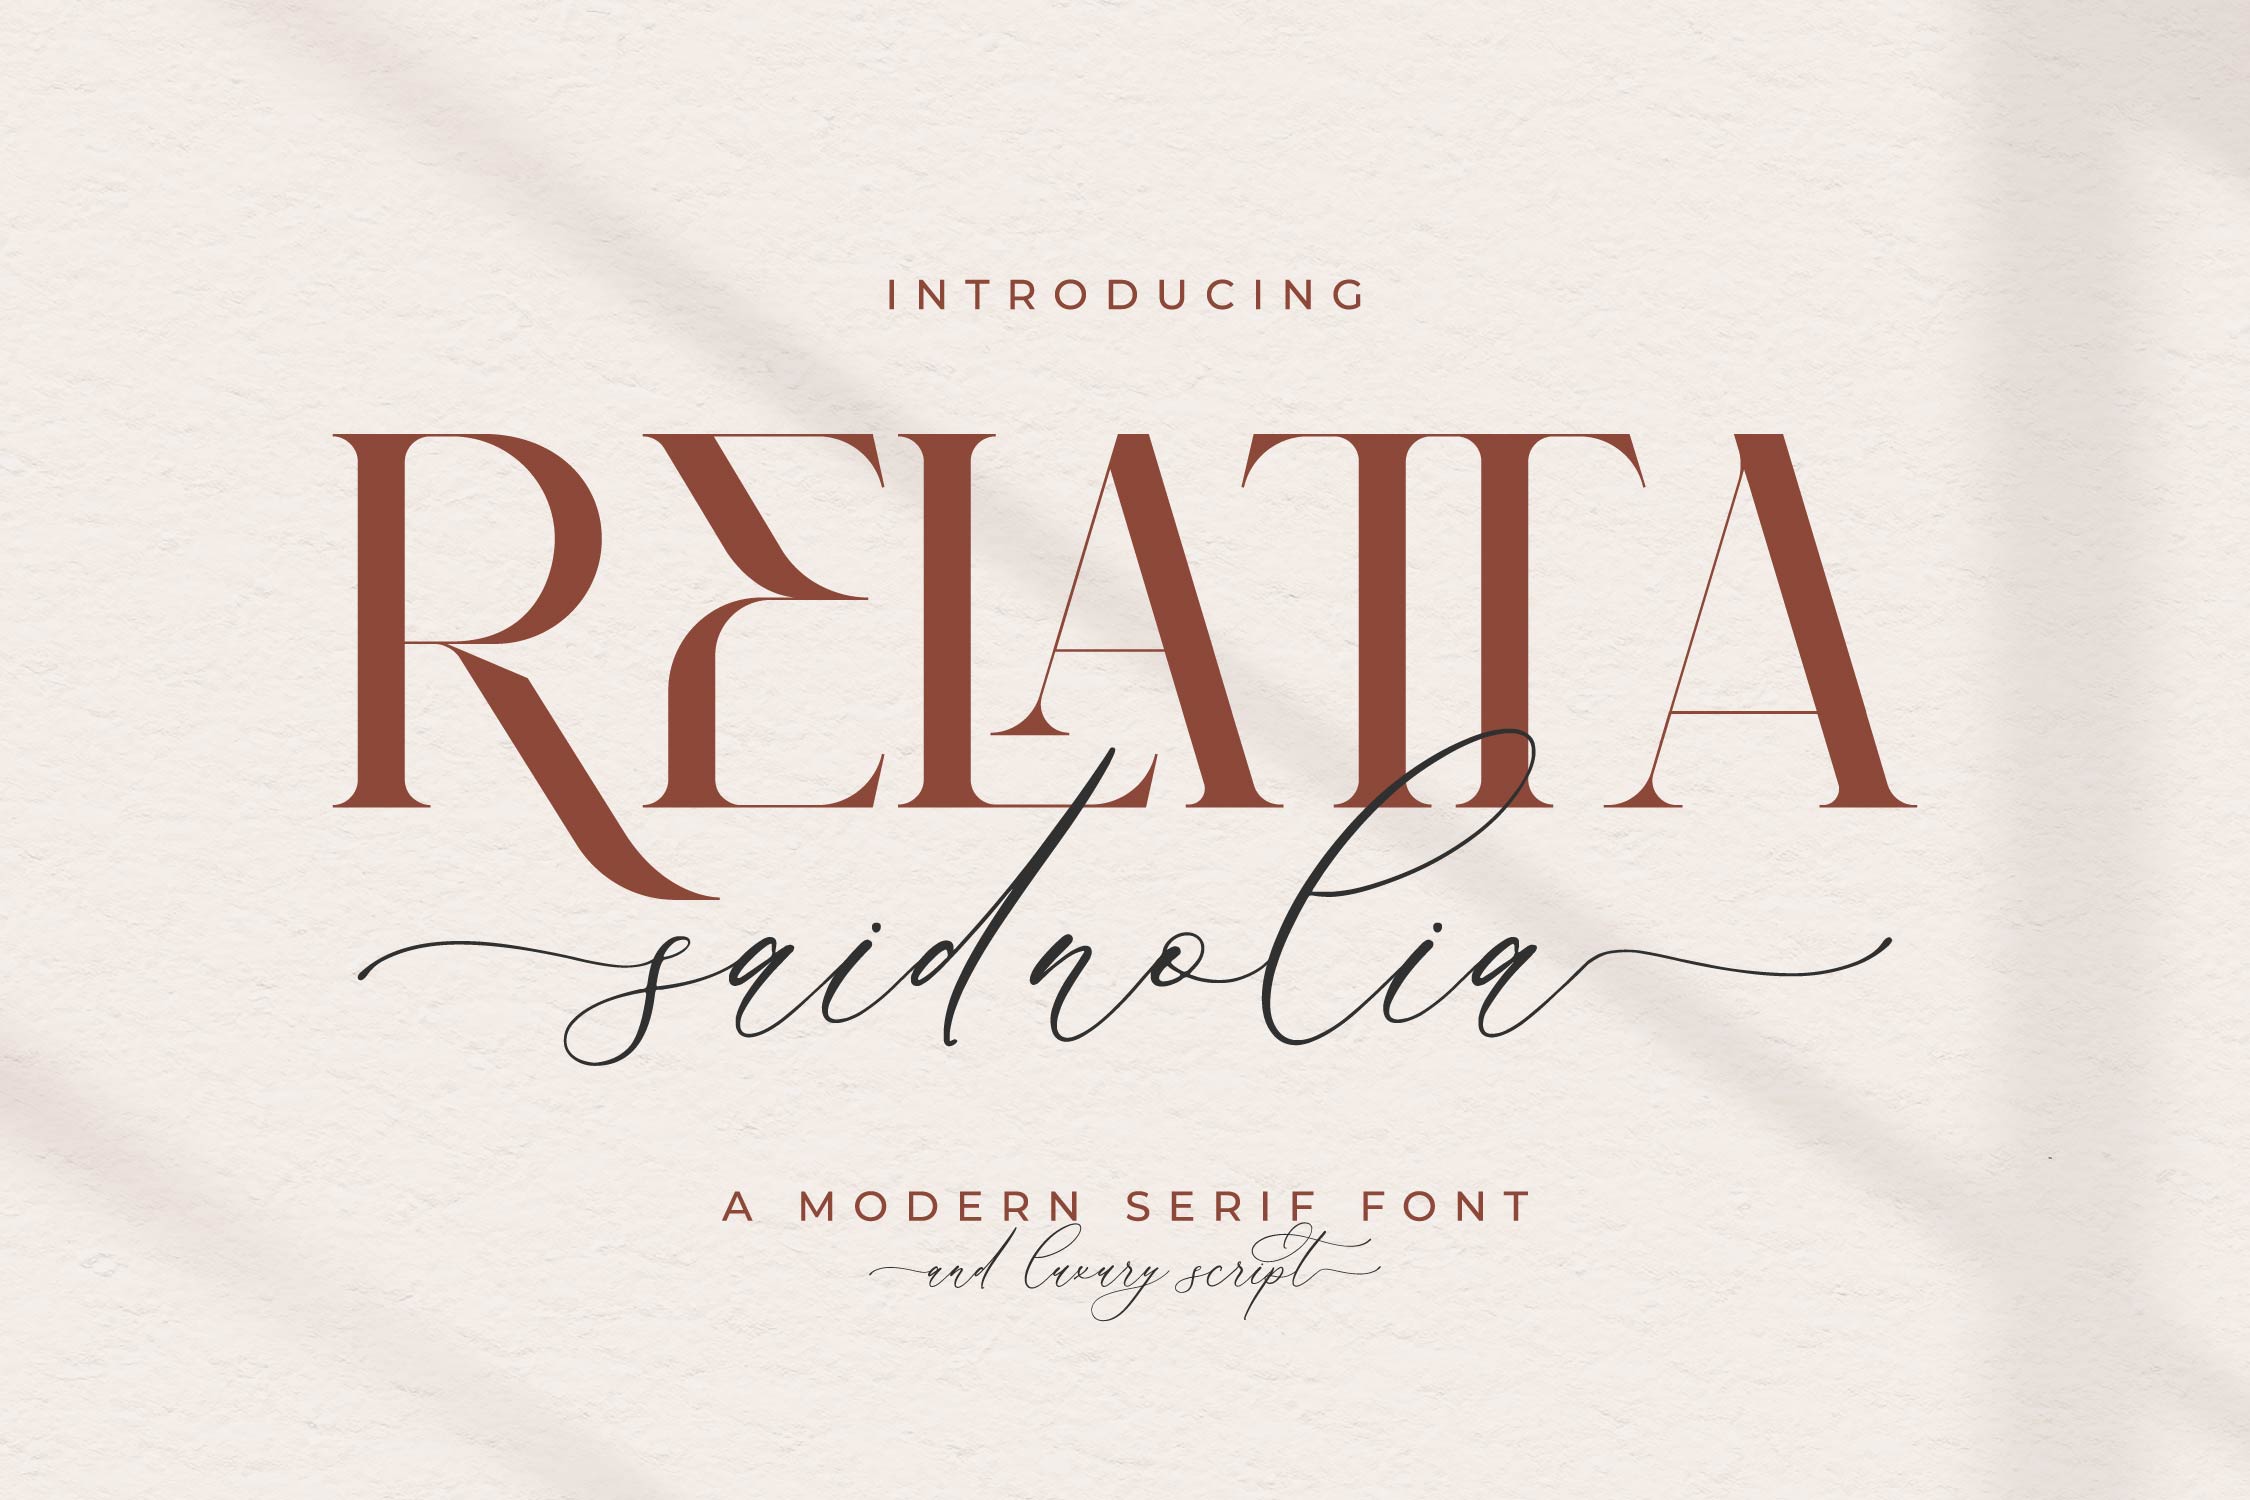 Relatta Saidnolia Free Font